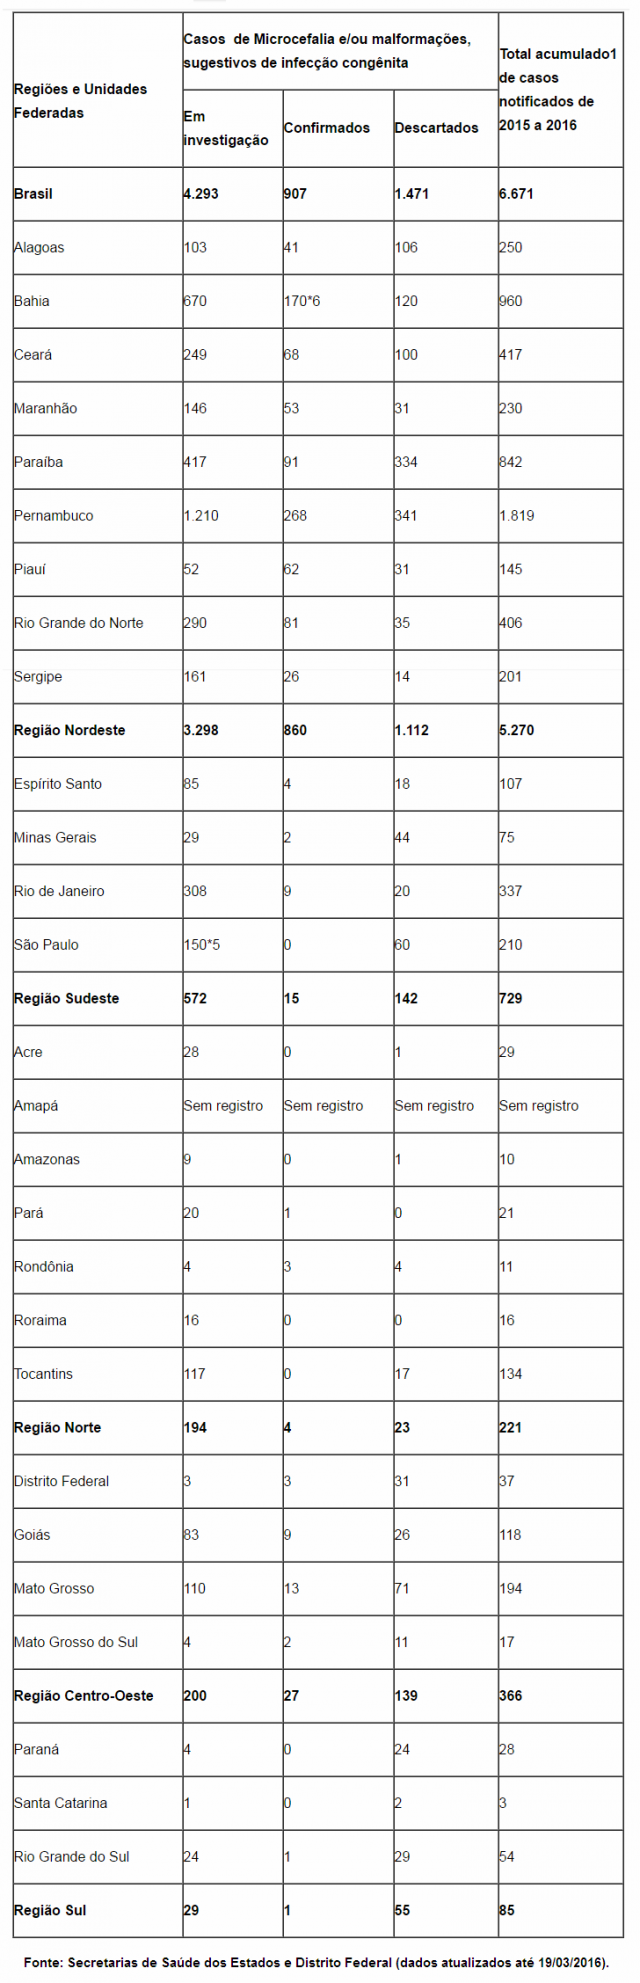 Ministério da Saúde investiga 4.293 casos de microcefalia no país